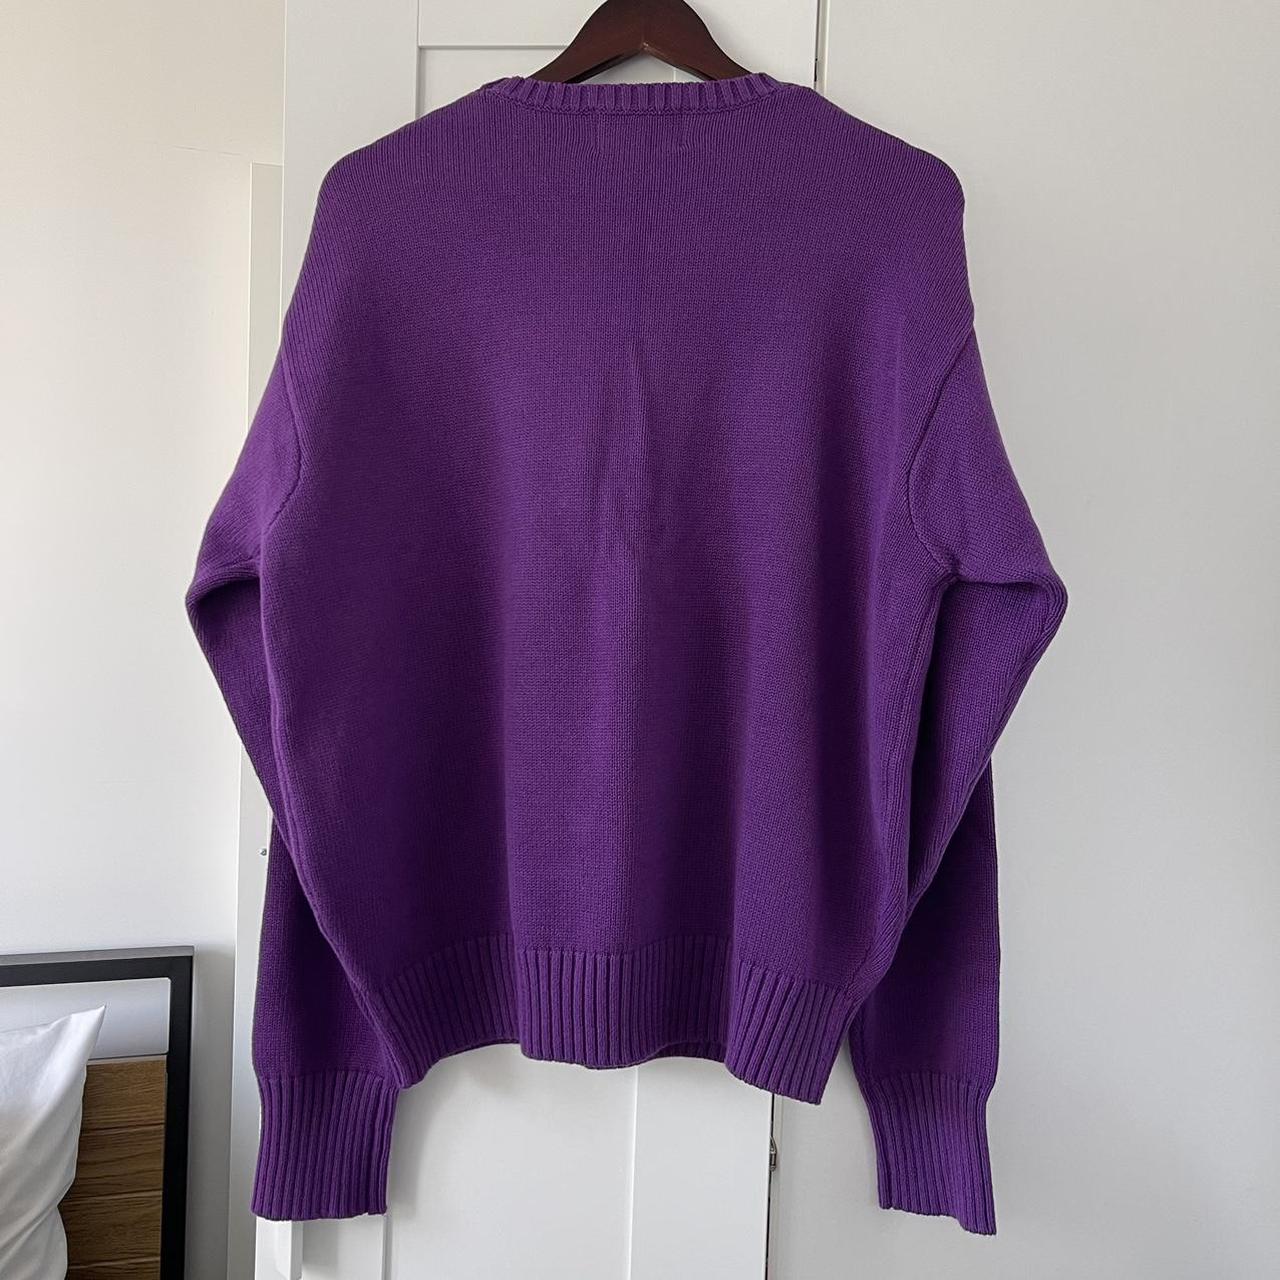 Denim Tears ‘Tyson Beckford Sweater' in purple. Size... - Depop